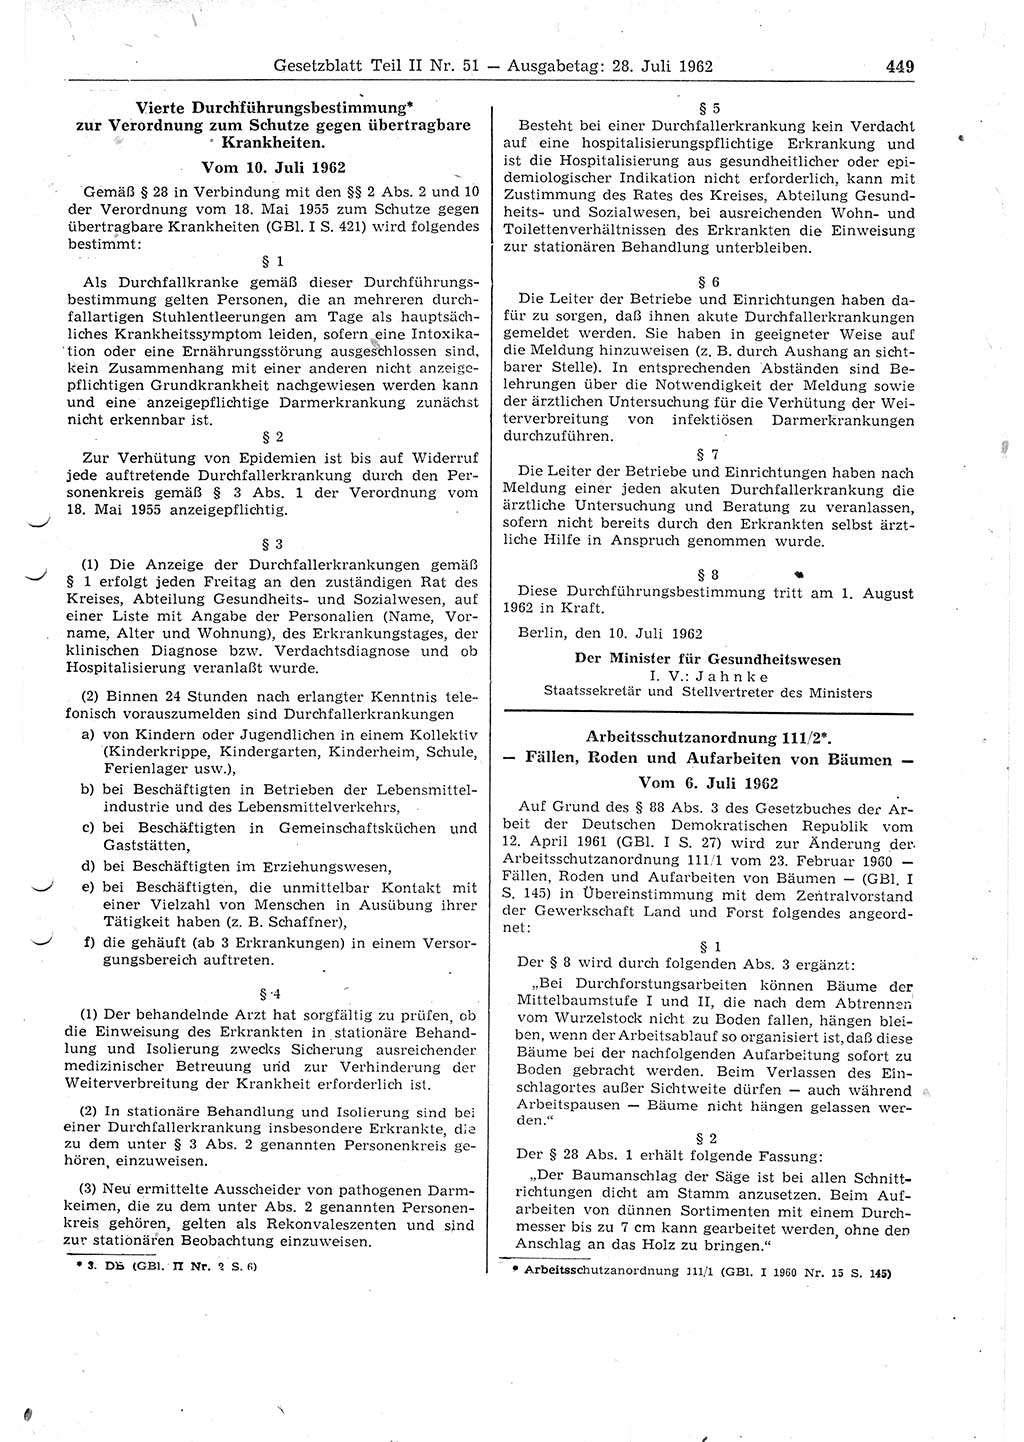 Gesetzblatt (GBl.) der Deutschen Demokratischen Republik (DDR) Teil ⅠⅠ 1962, Seite 449 (GBl. DDR ⅠⅠ 1962, S. 449)